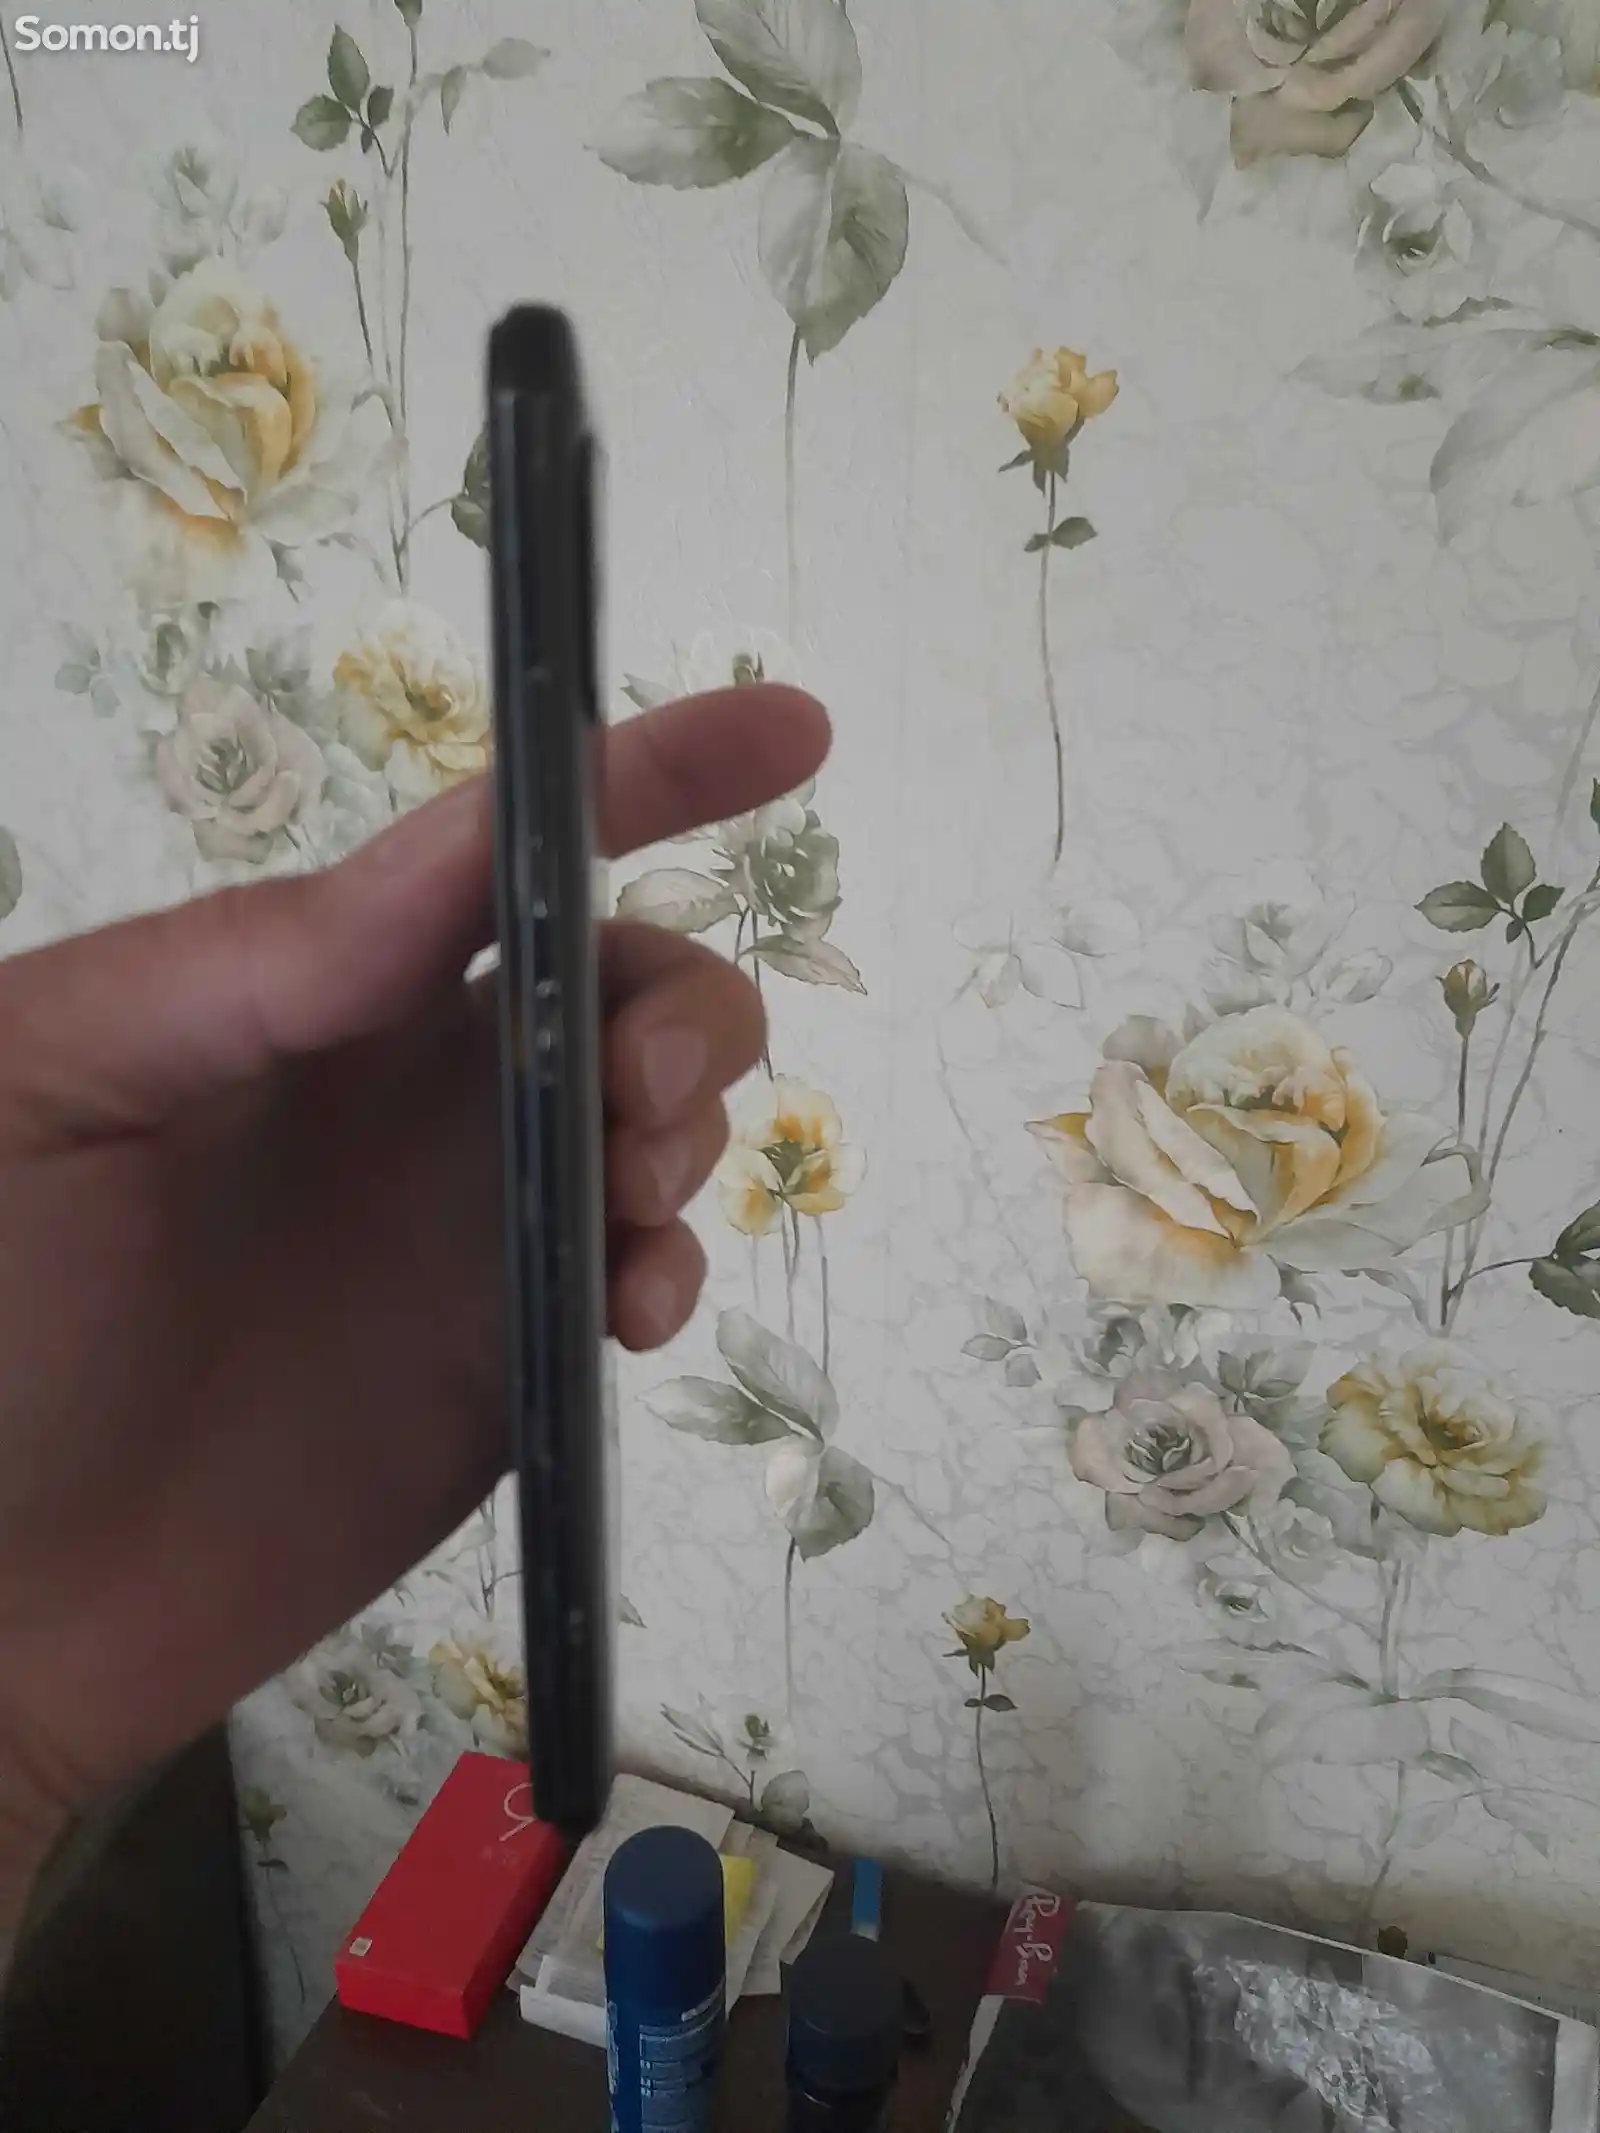 Xiaomi Redmi Note 5 64gb-2